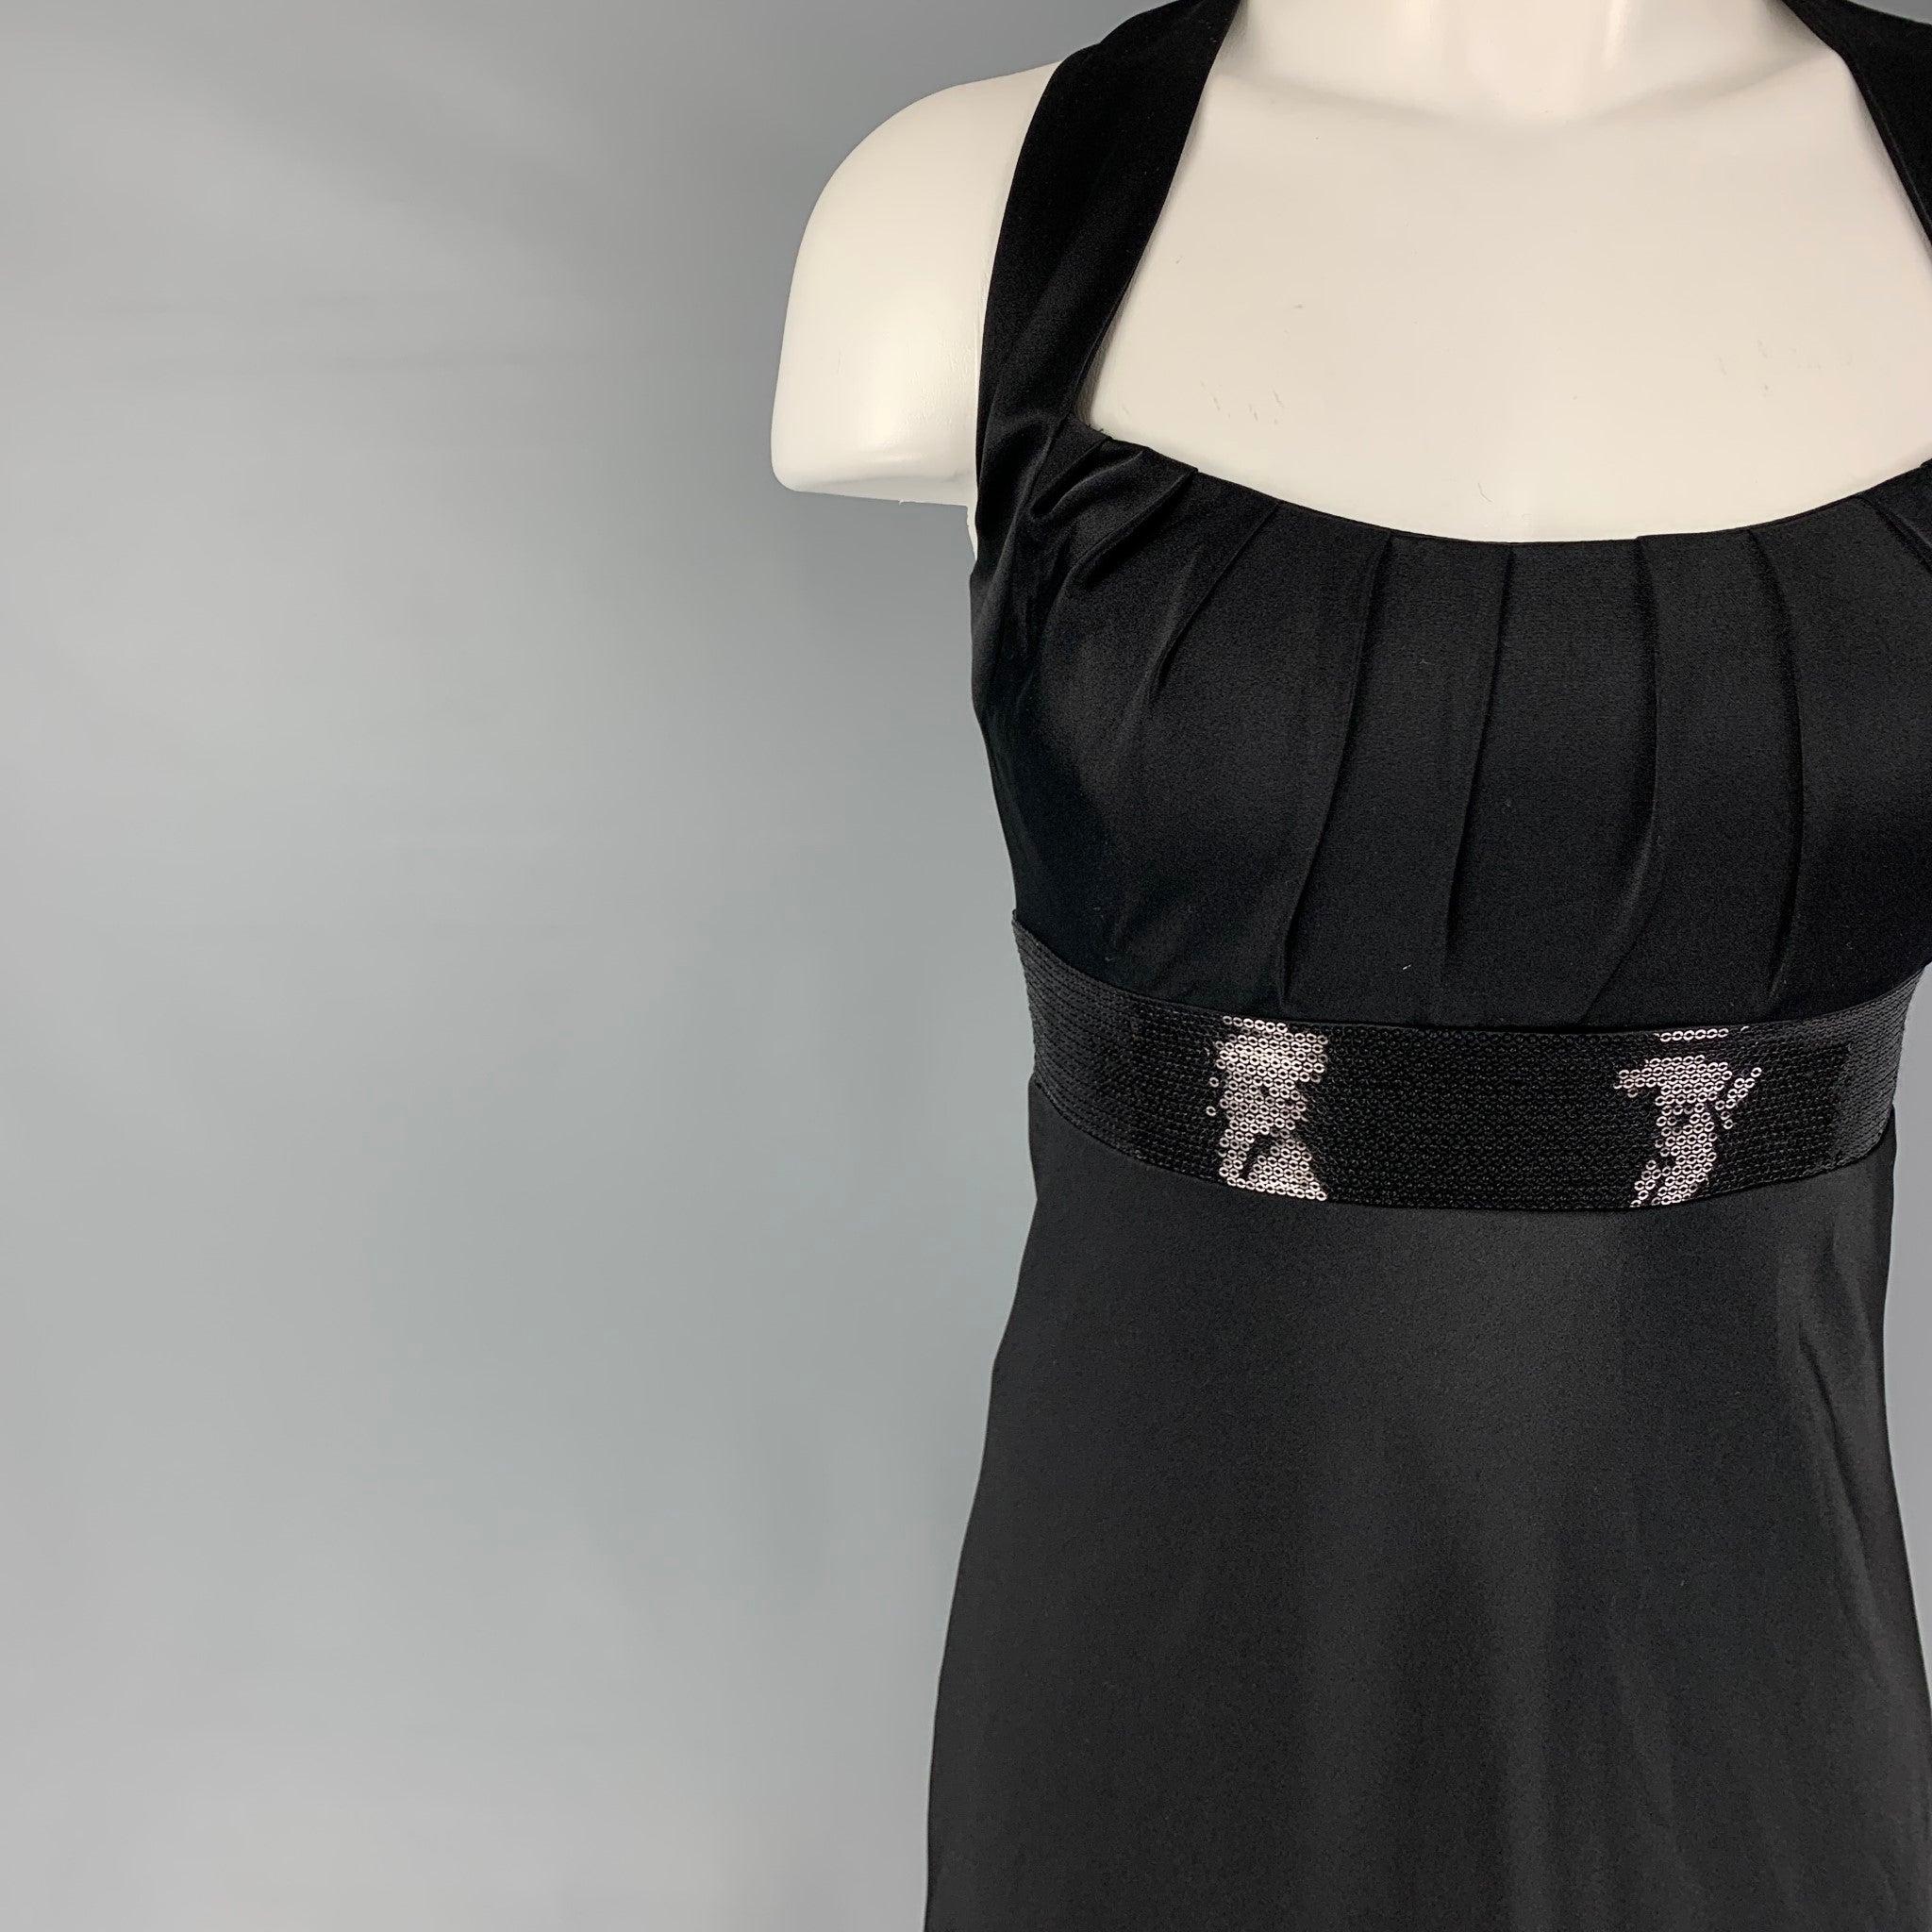 La robe CALVIN KLEIN se compose d'un polyester noir avec une doublure à glissière, d'un panneau pailleté, d'un dos croisé, de manches et d'une fermeture à glissière dans le dos.
Neuf avec étiquettes.
 

Marqué :  2 

Mesures : 
 Poitrine : 30 pouces